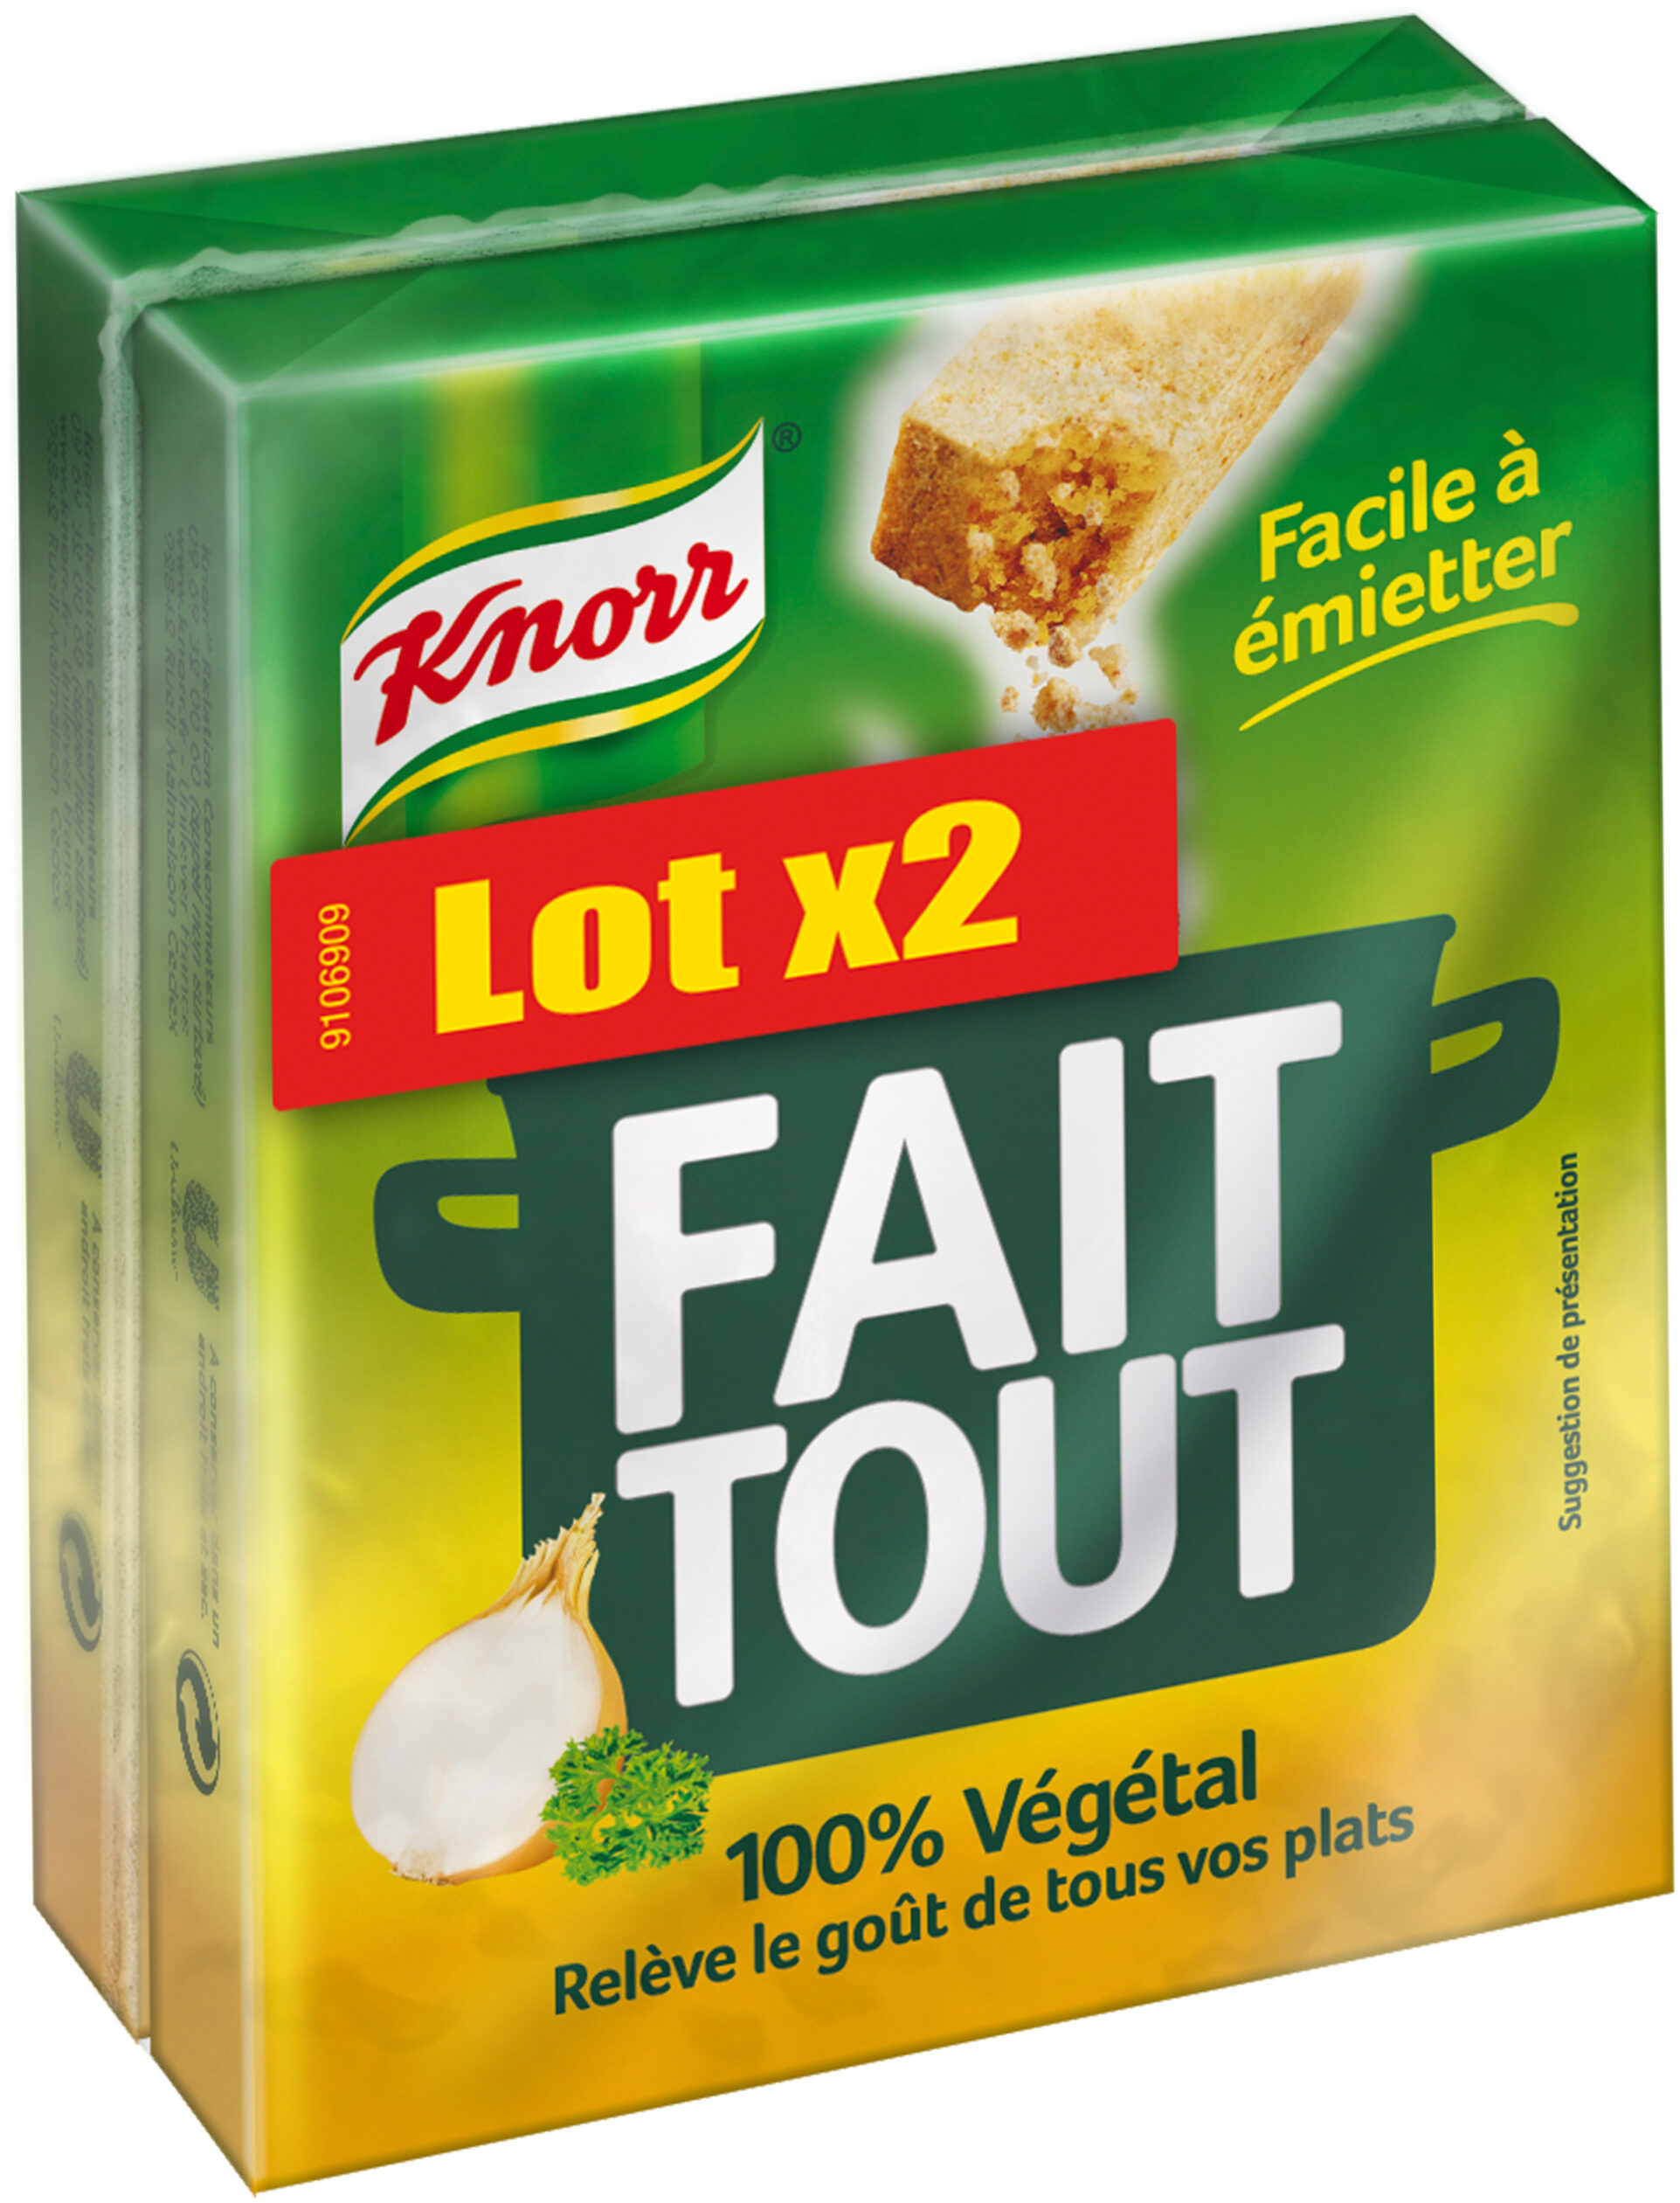 Knorr Bouillon Cube Fait Tout 100% Végétal Lot 2x10 - 200g - Product - fr